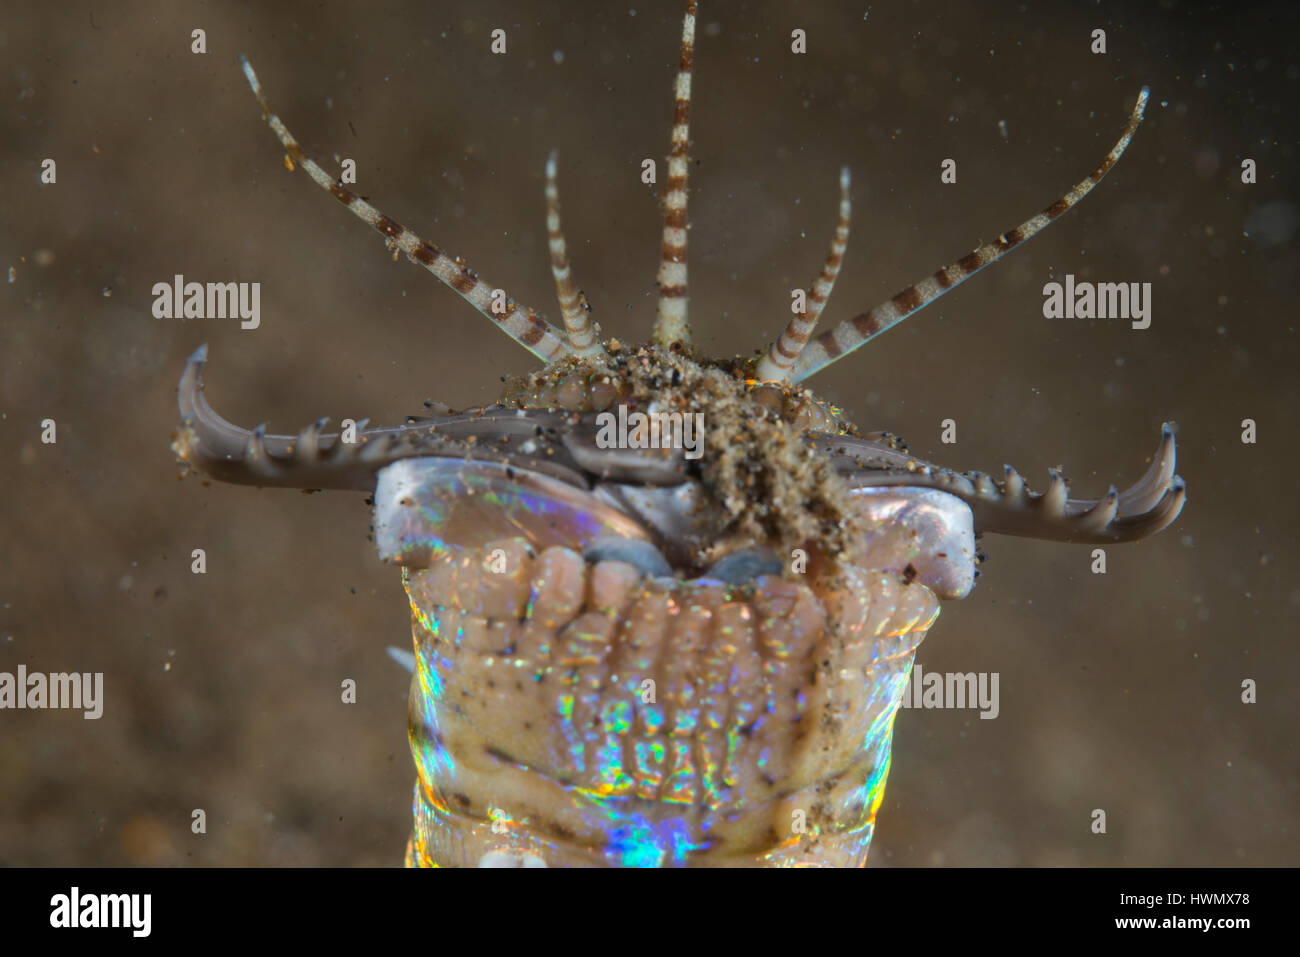 Kiefer ein Bobbit-Wurm, Eunice Aphroditois, Anilao, Luzon, Guimaras Strait, Philippinen Stockfoto